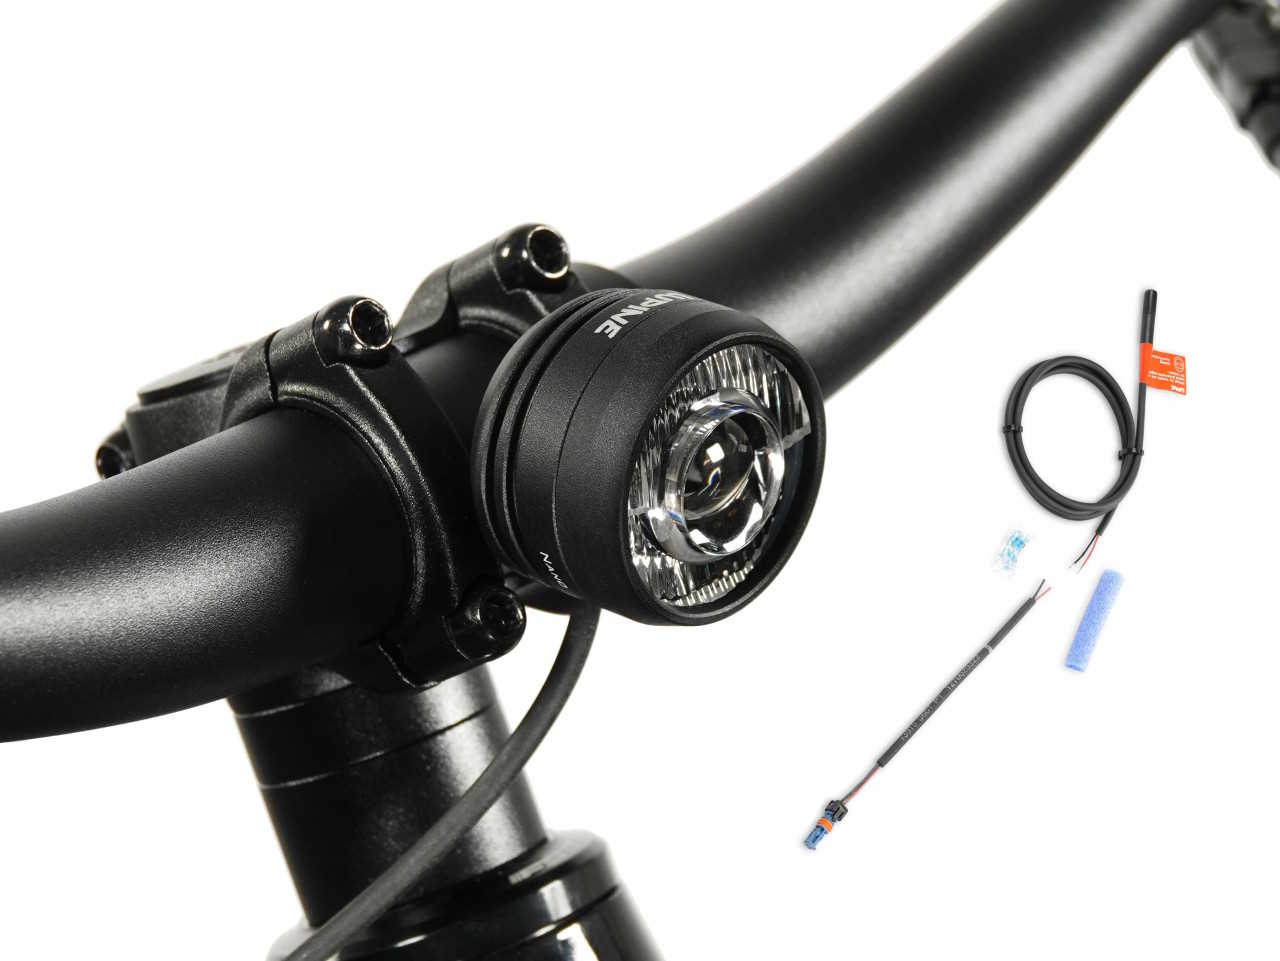 Produktbild von Lupine SL Nano für E-Bikes mit Bosch Motor, E-Bike Beleuchtung mit 900 Lumen Fernlicht, Lenkerhalter 31,8mm + Kabelfernbedienung